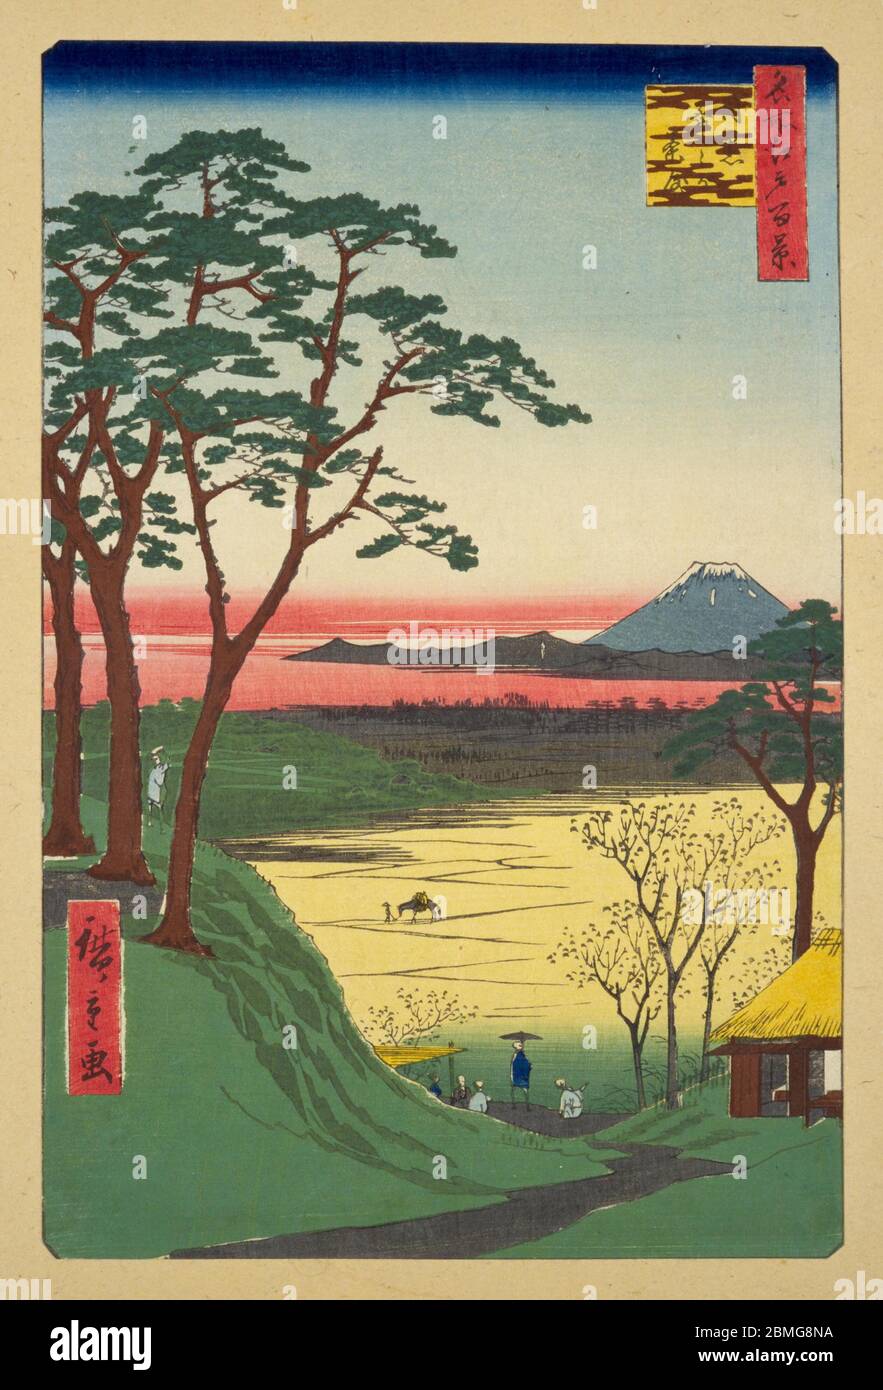 [ 1850er Japan - Meguro und Mount Fuji ] - EIN Teehaus in Meguro, Edo (derzeit Tokio), 1857 (Ansei 4). Im Hintergrund ist der Fuji zu sehen. Dieser Holzschnitt ist Bild 84 in hundert berühmten Ansichten von Edo (名所江戸百景, Meisho Edo Hyakkei), einer Serie von Ukiyoe Künstler Utagawa Hiroshige (歌川広重, 1797–1858) erstellt. Es ist eine von 26 Herbstszenen der Serie. Titel: 'Opa's Teahouse' in Meguro (目黒爺々が茶屋, Meguro jijigachaya) Vintage Ukiyoe Holzschnitt aus dem 19. Jahrhundert. Stockfoto